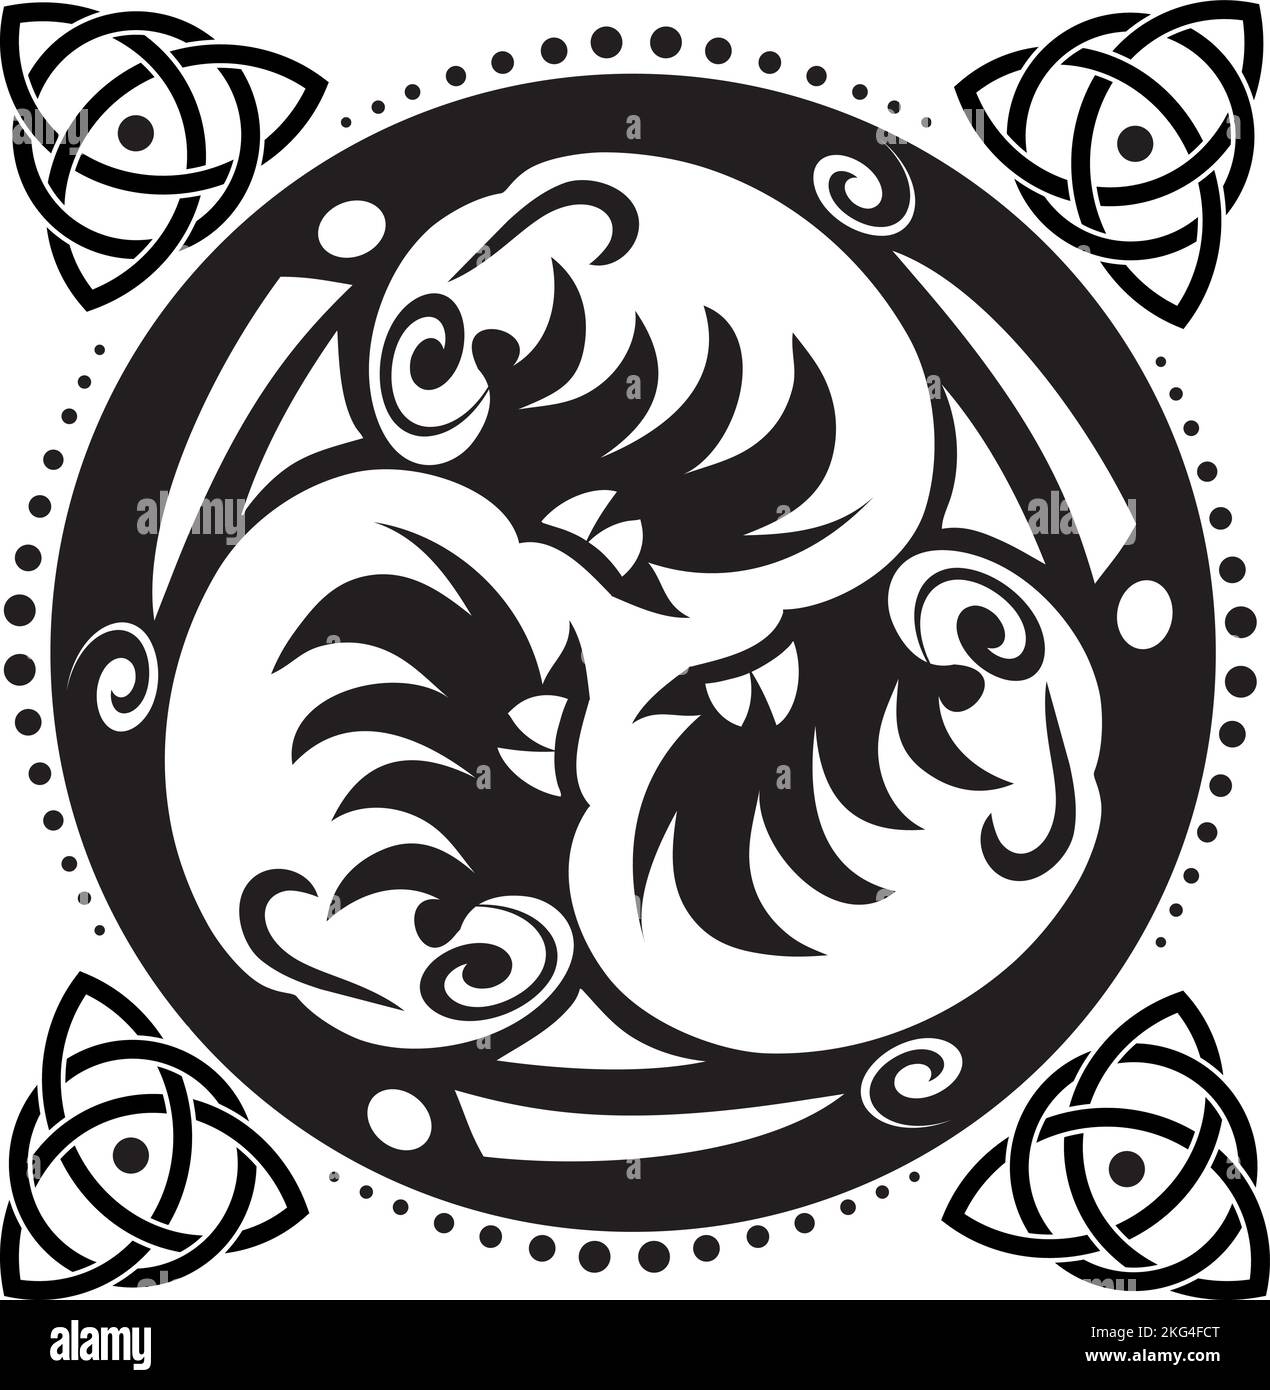 Cercle celtique de Knot et de Triskelion - symbole celtique - Trinité - géométrie sacrée - énergie Illustration de Vecteur